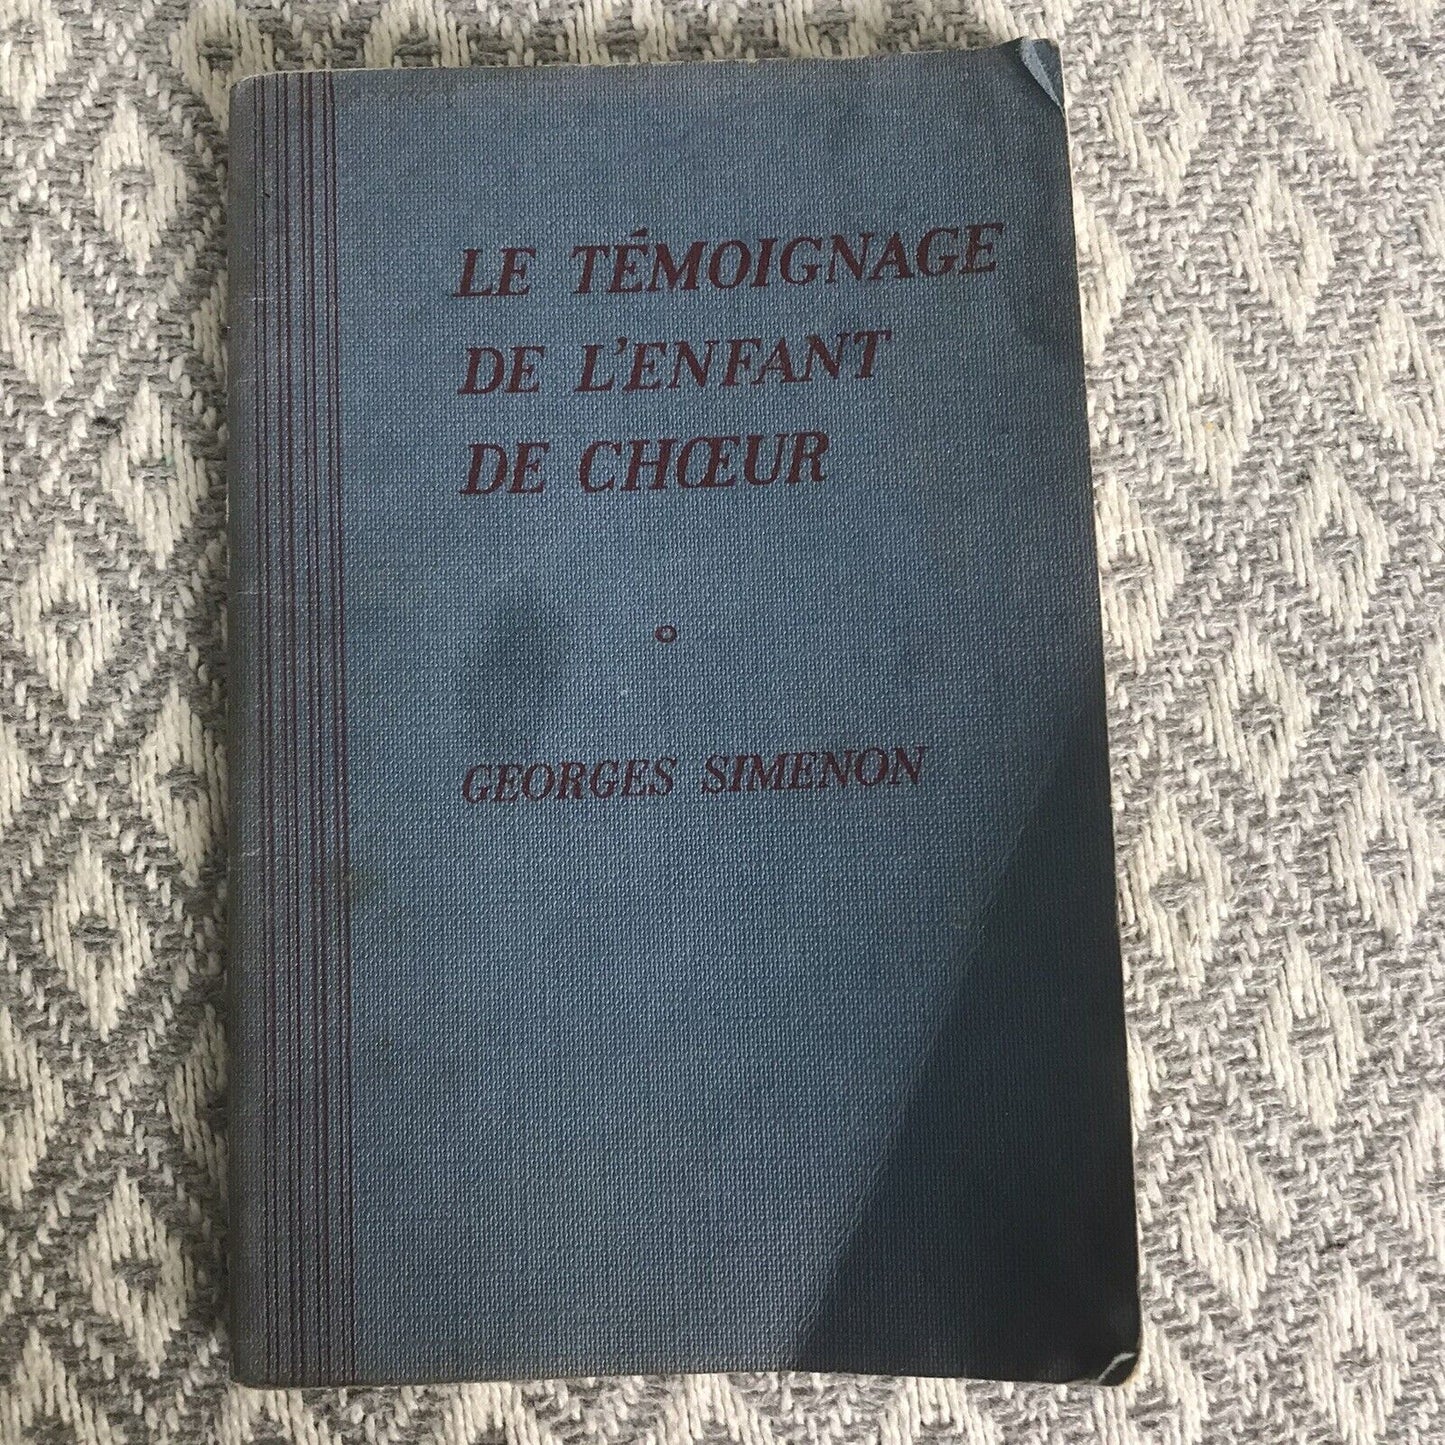 1957 Le Témoignage De L’Enfant De Chœur - Georges Simenon(Harrap) French